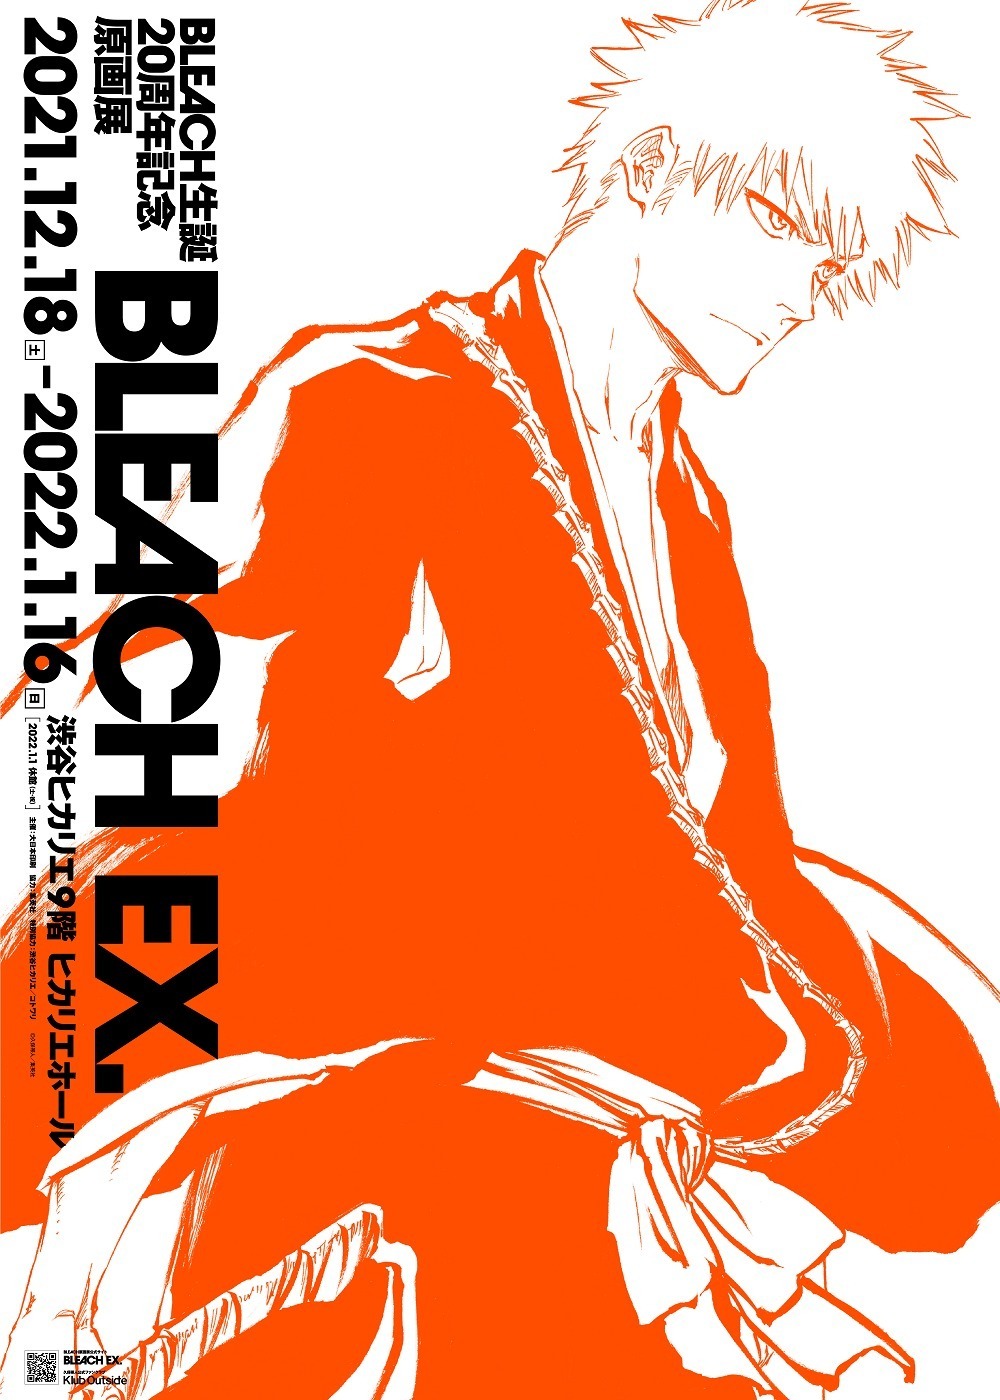 久保帯人の漫画『BLEACH』初の原画展が渋谷ヒカリエで、20年の歩みを 